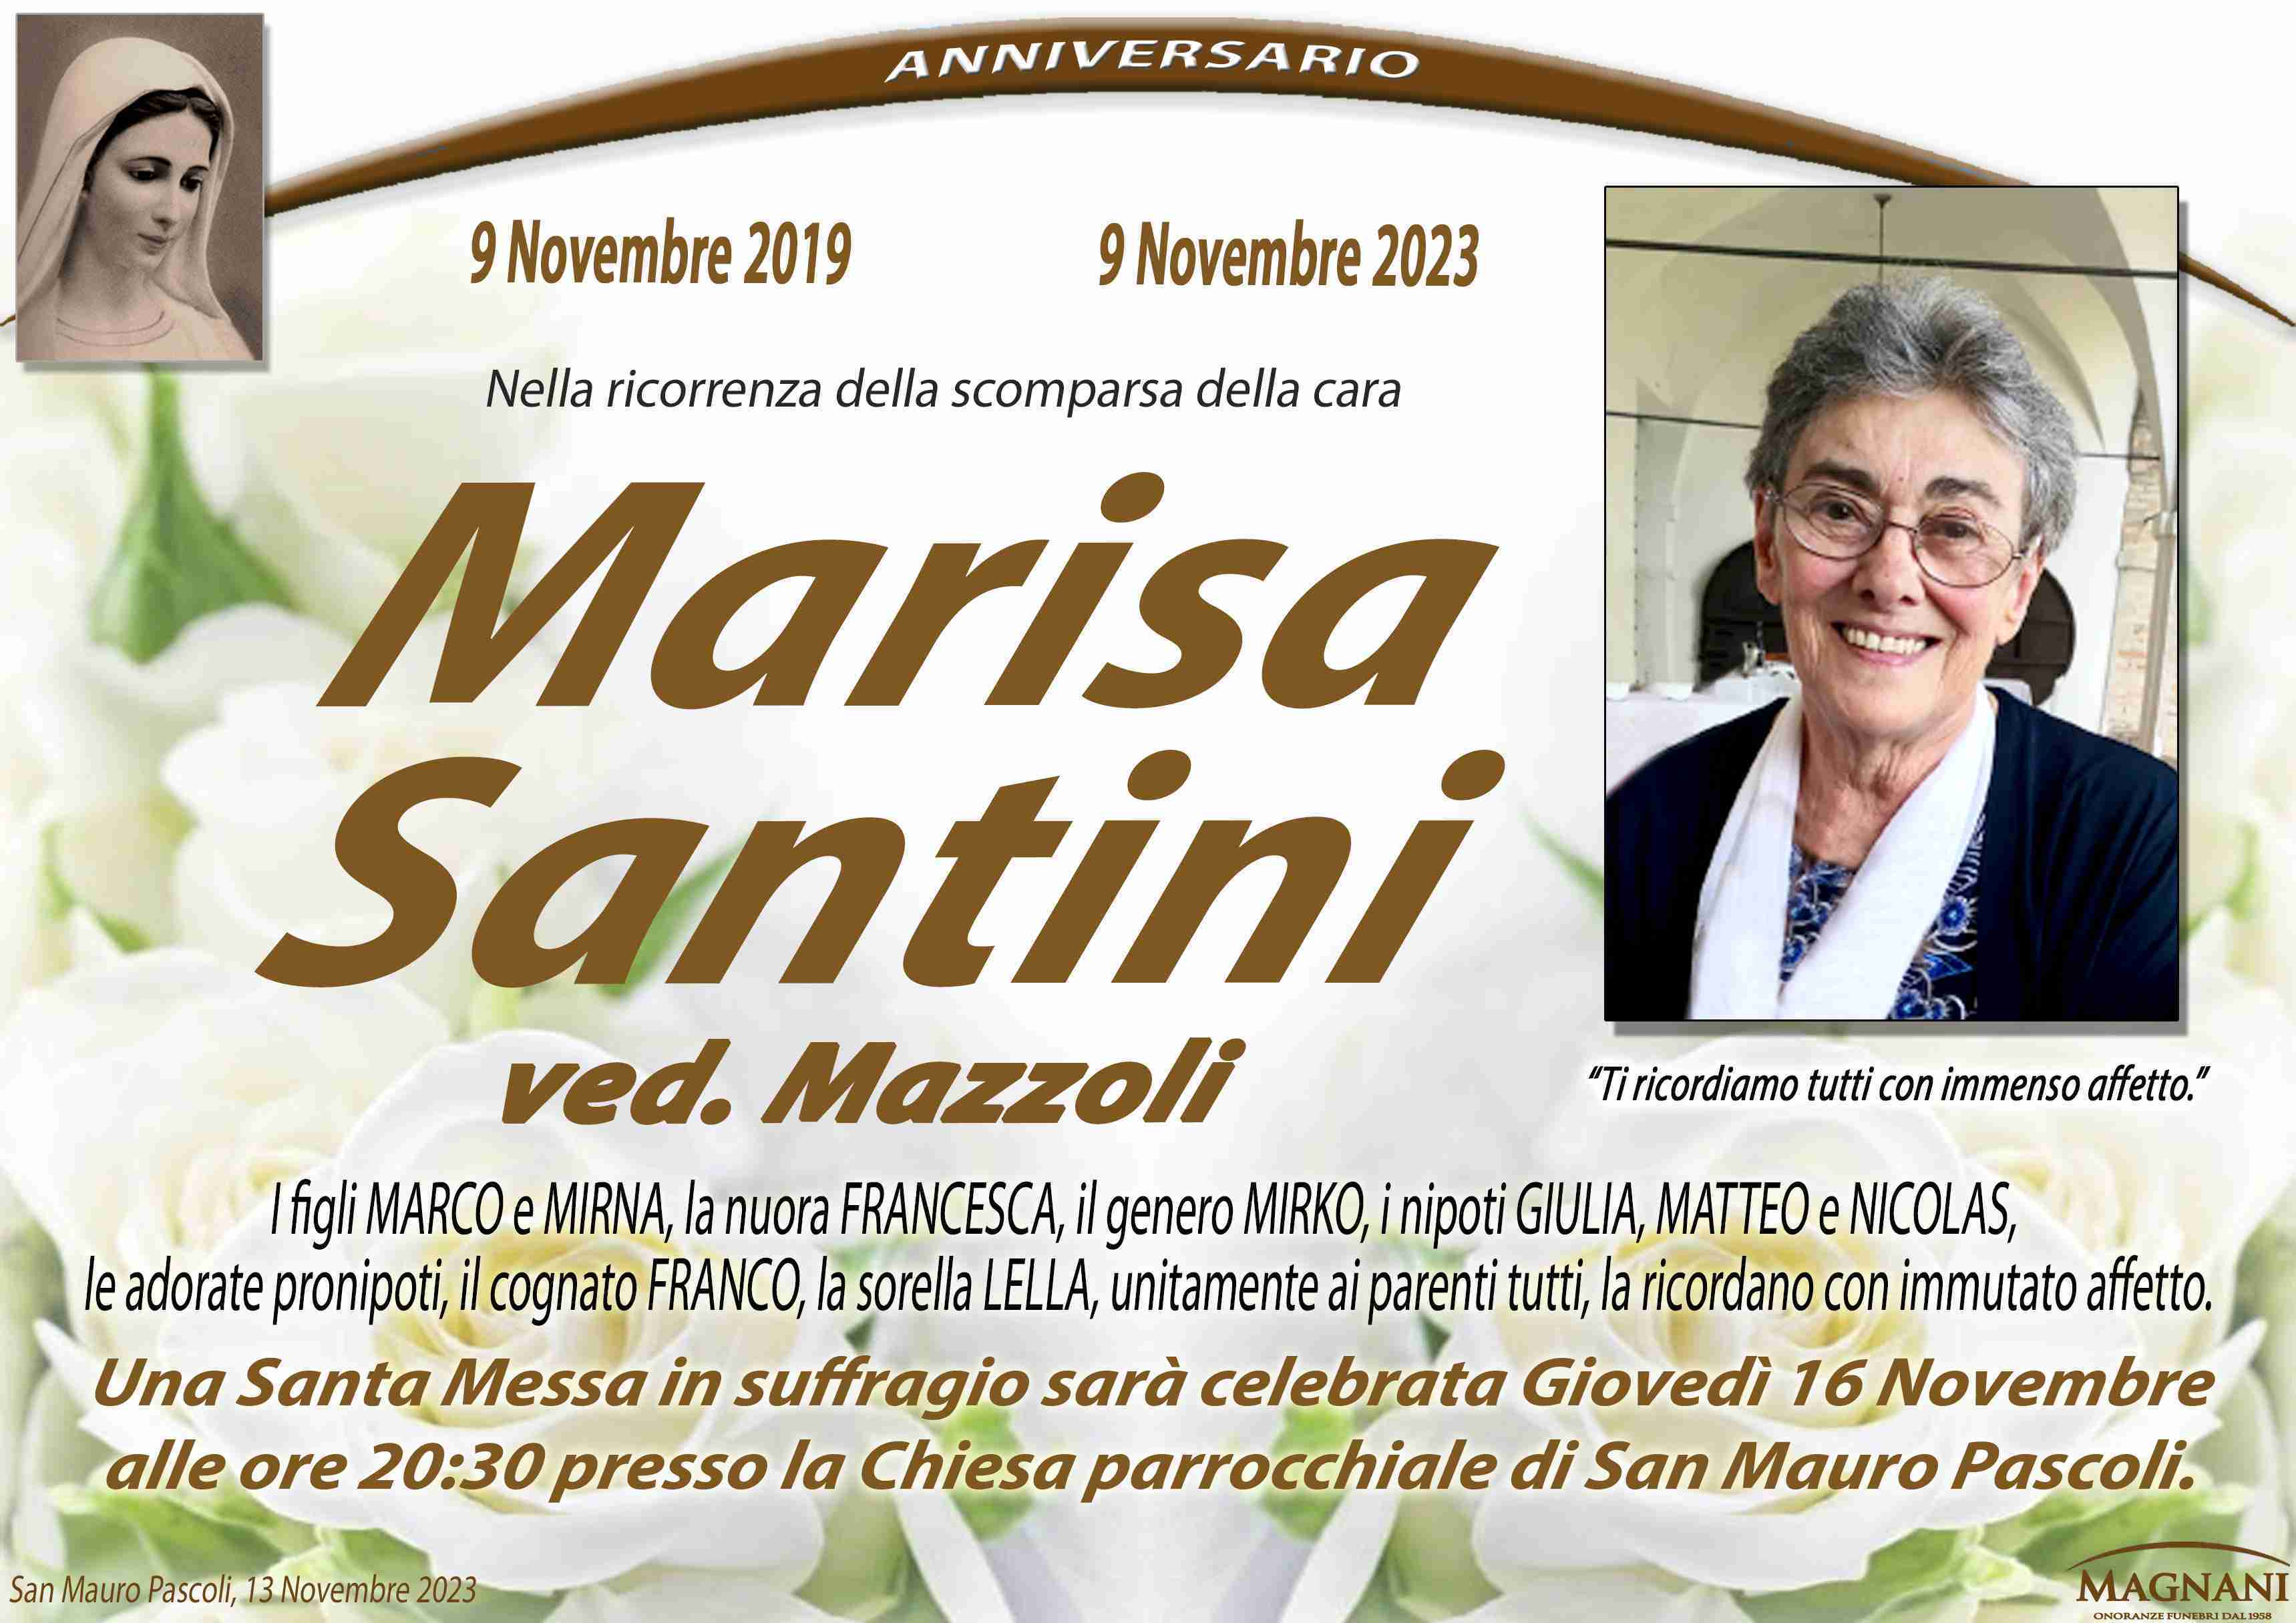 Marisa Santini